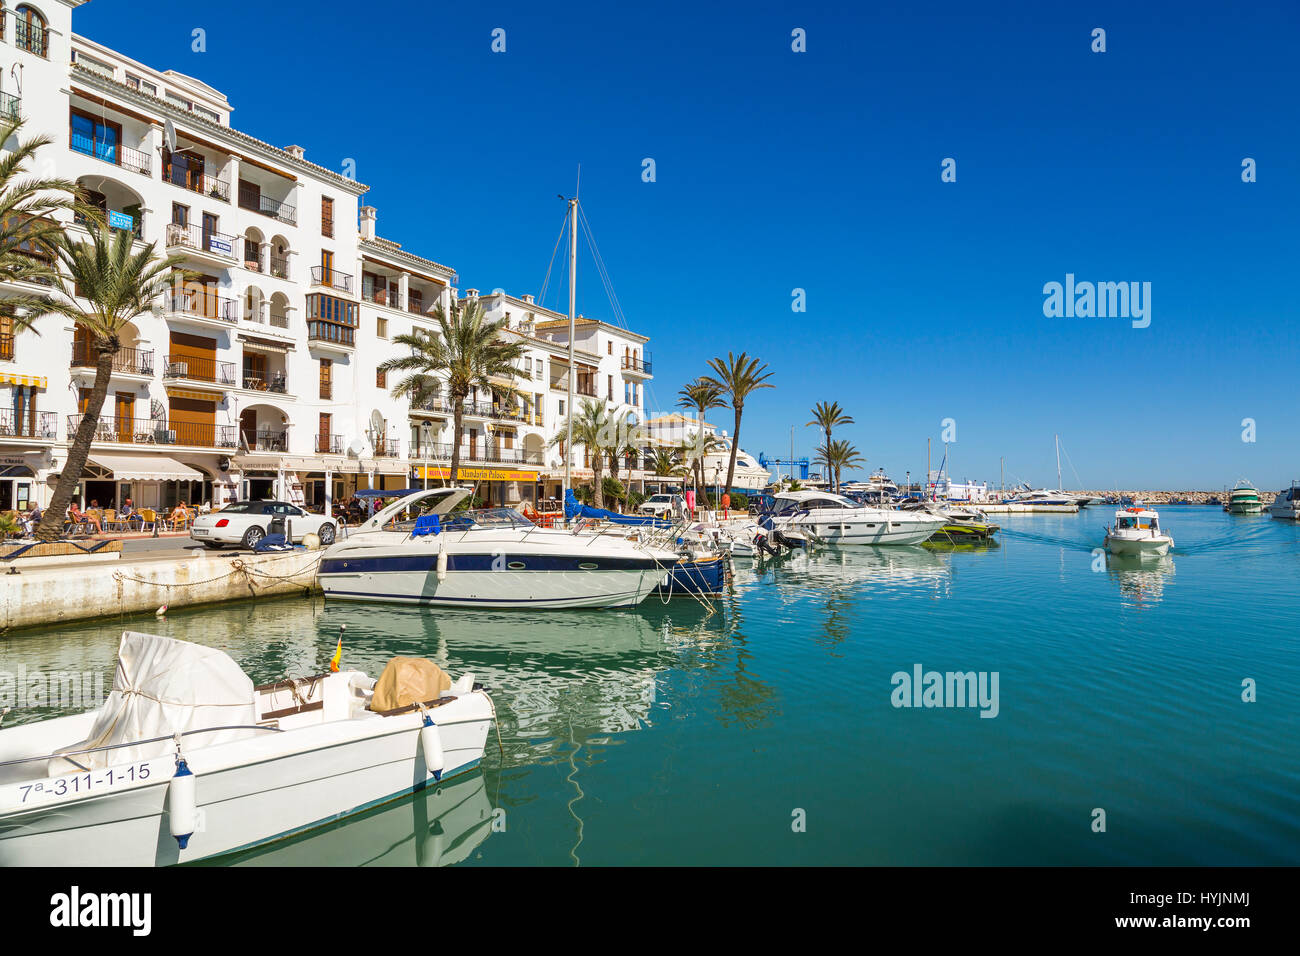 Marina. Puerto Deportivo La Duquesa, Manilva. Malaga province Costa del Sol. Andalusia Southern Spain, Europe Stock Photo